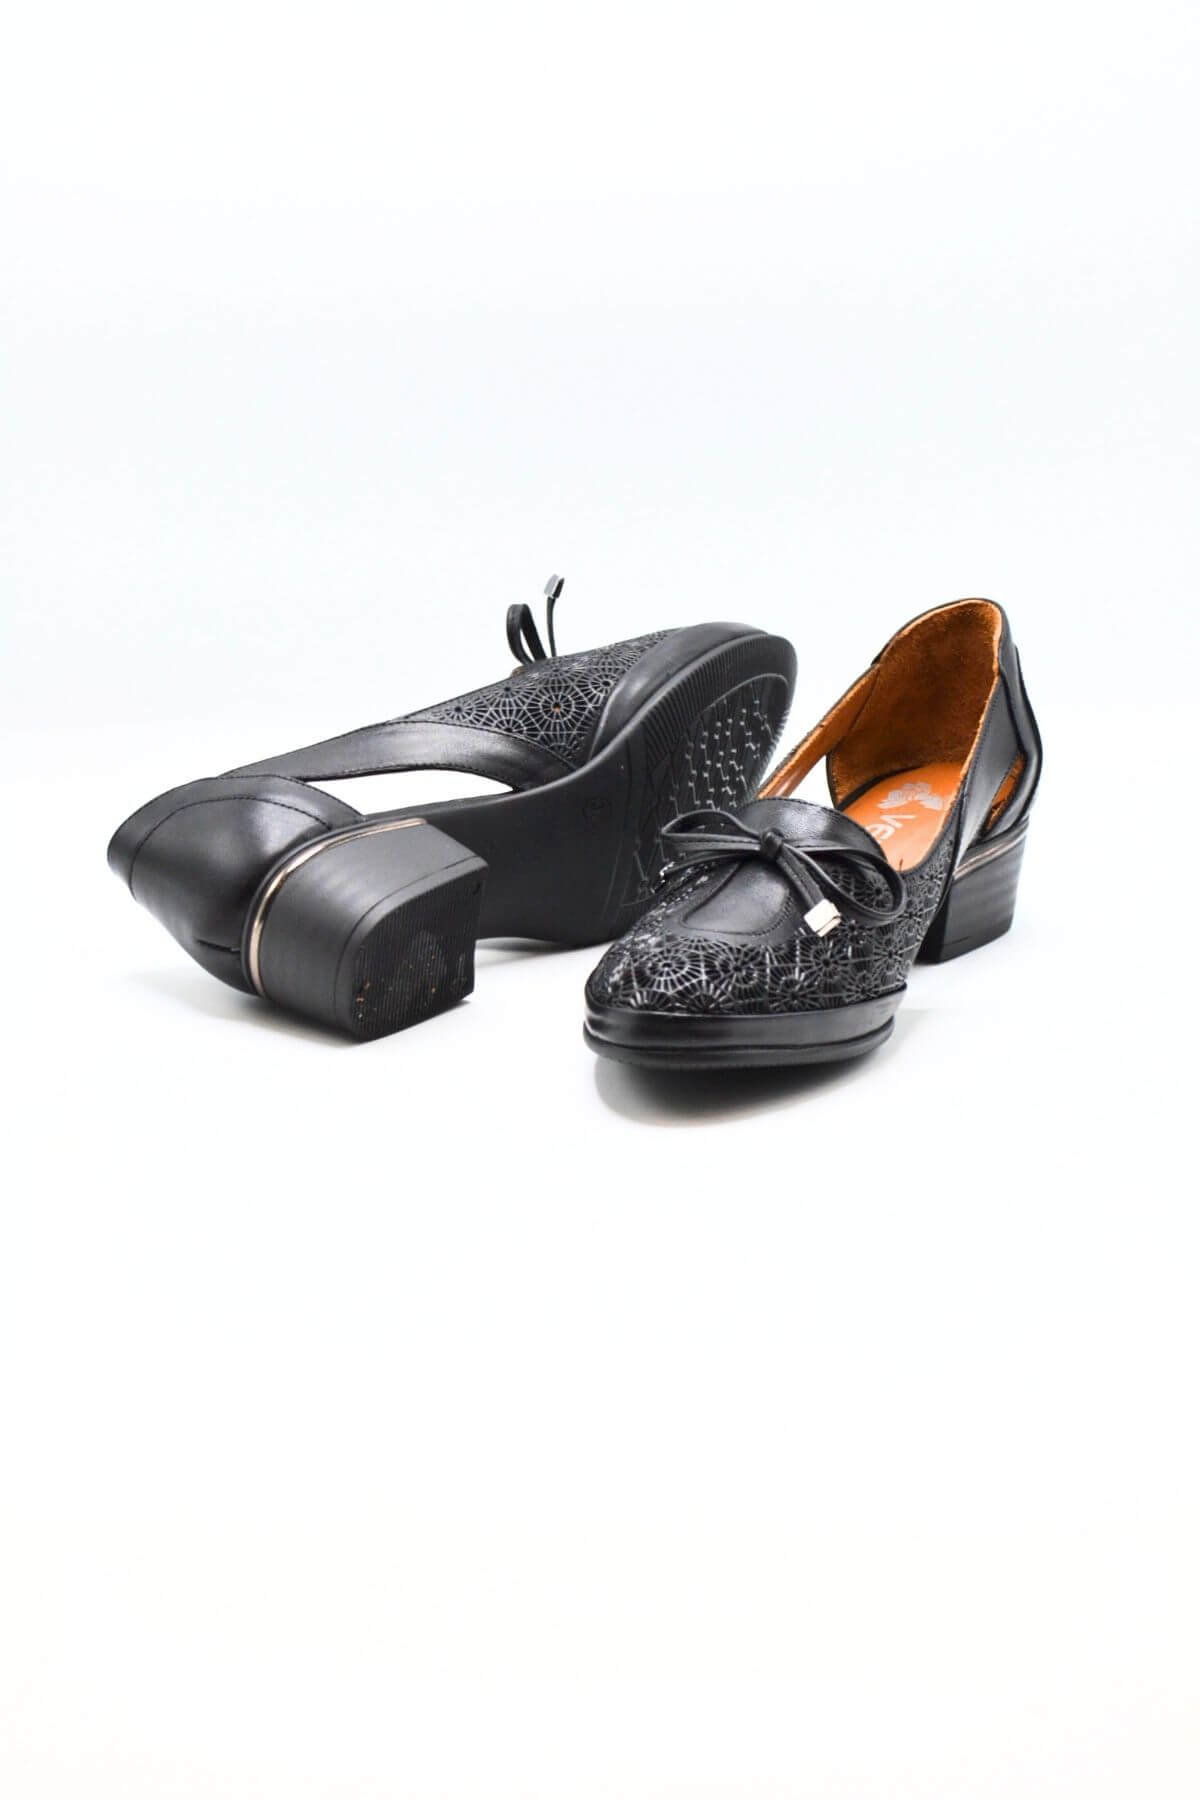 Kadın Topuklu Deri Ayakkabı Siyah 2312522Y